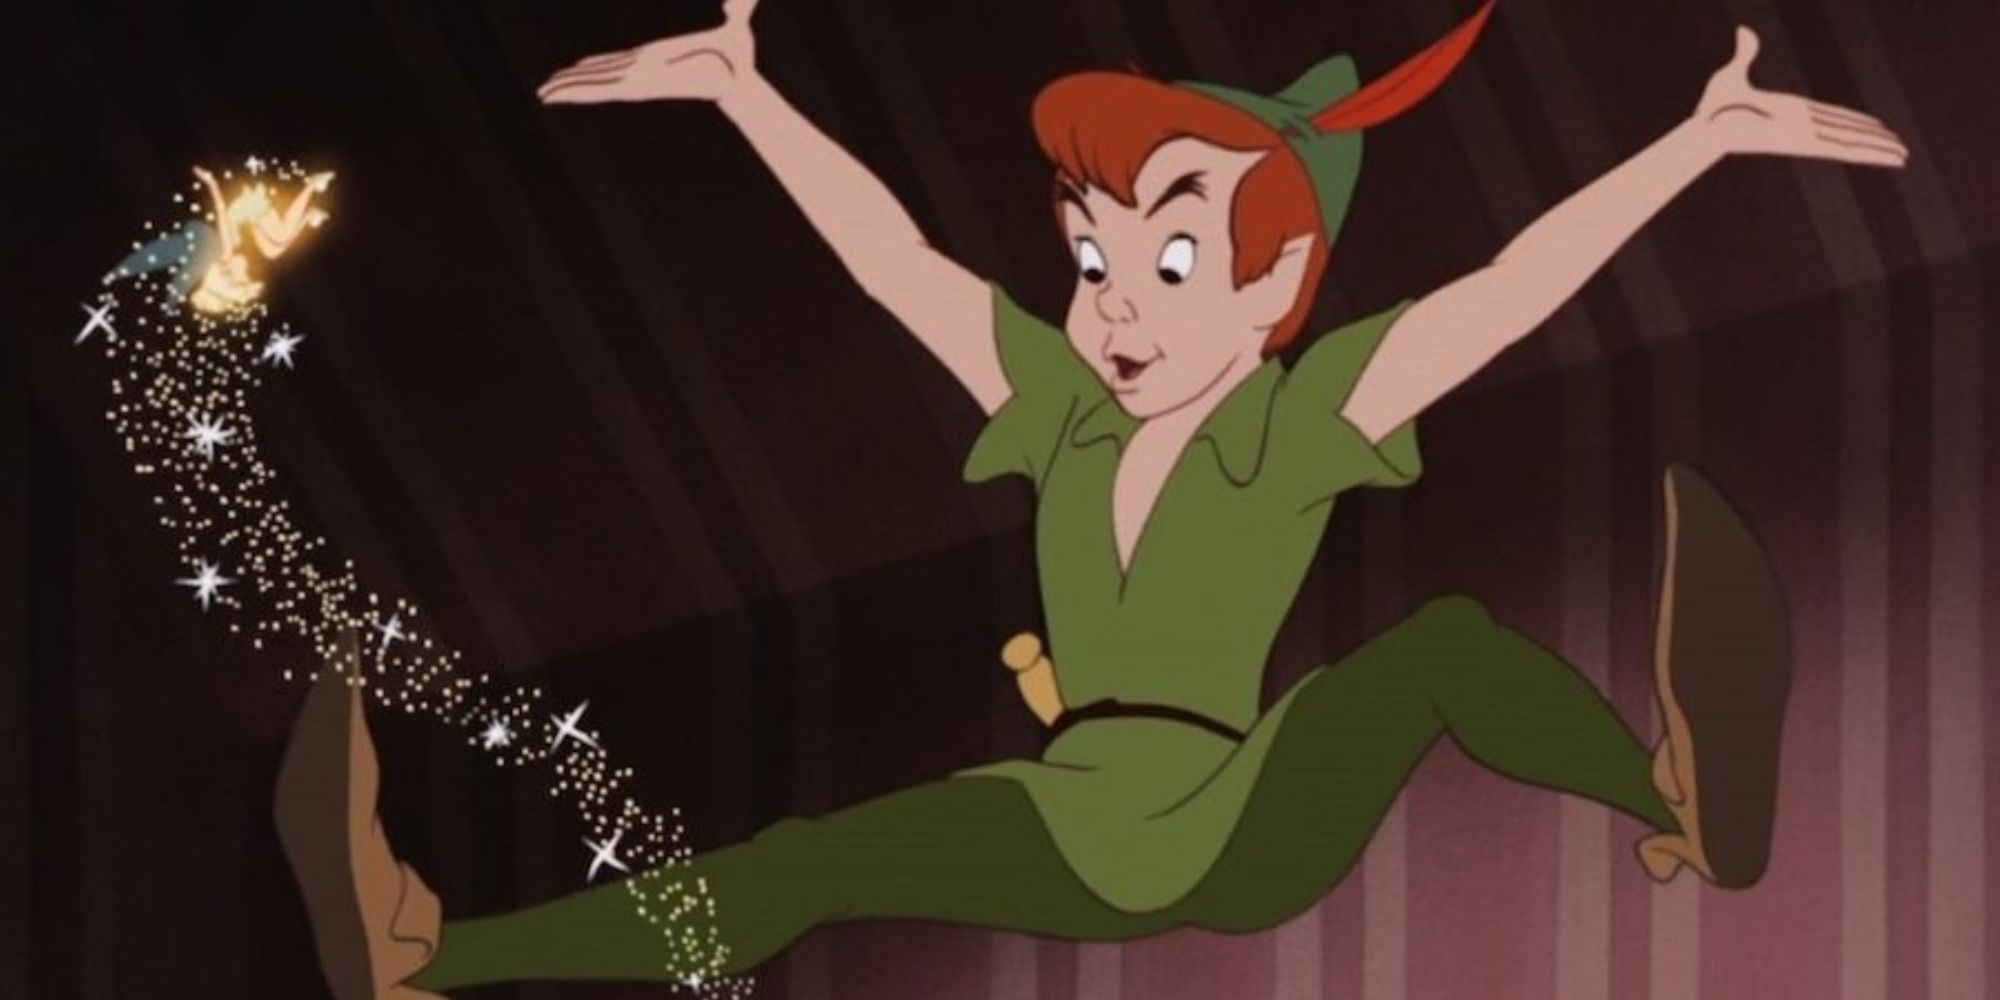 Peter Pan et la fée Clochette volent dans le film Peter Pan de Disney.